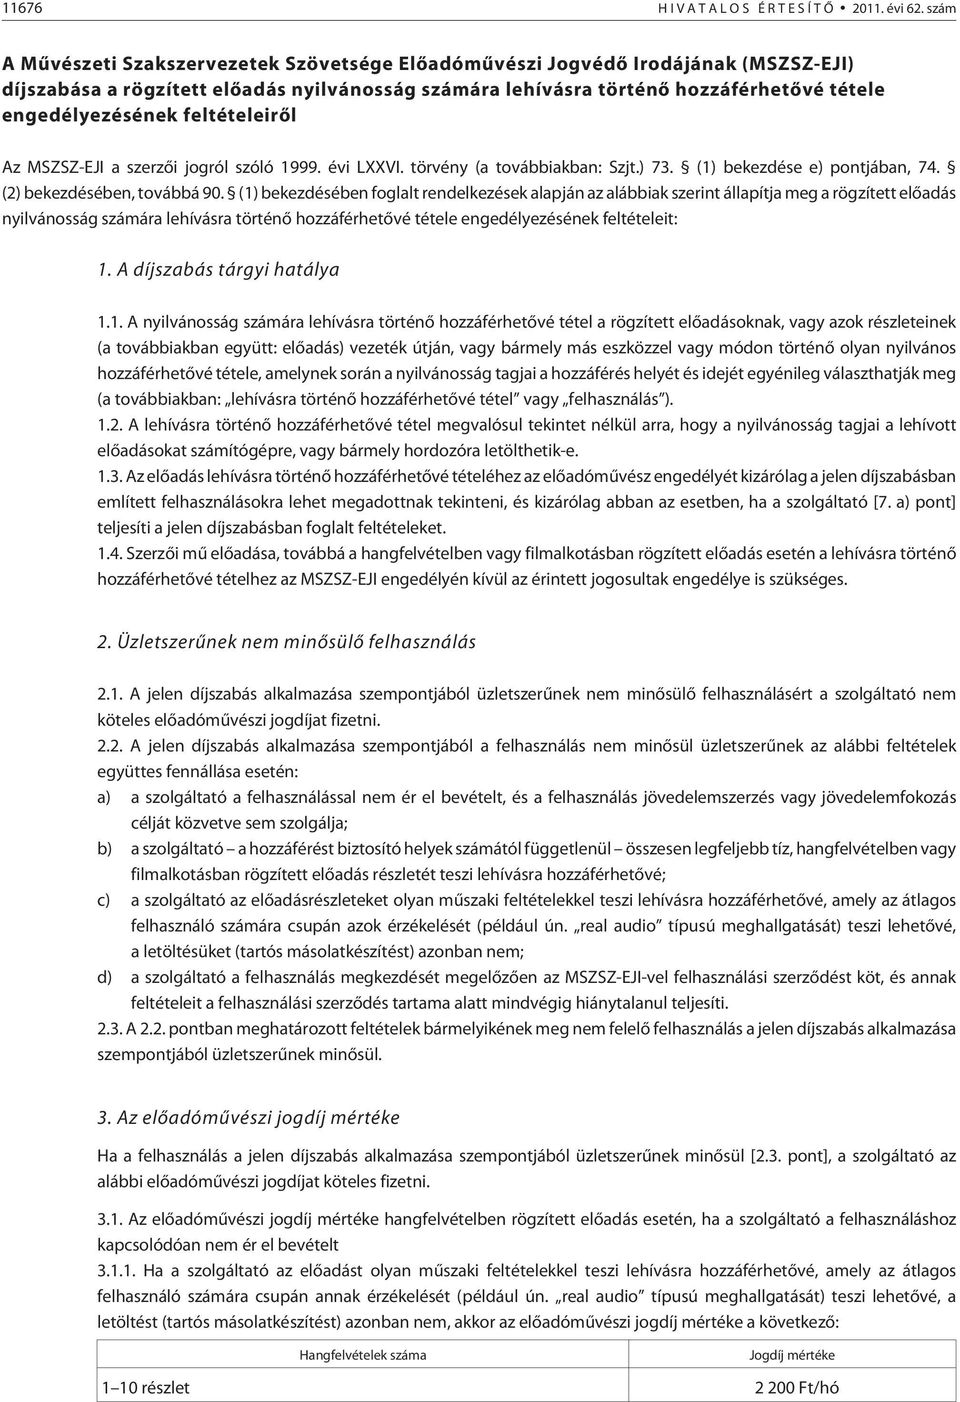 feltételeirõl Az MSZSZ-EJI a szerzõi jogról szóló 1999. évi LXXVI. törvény (a továbbiakban: Szjt.) 73. (1) bekezdése e) pontjában, 74. (2) bekezdésében, továbbá 90.